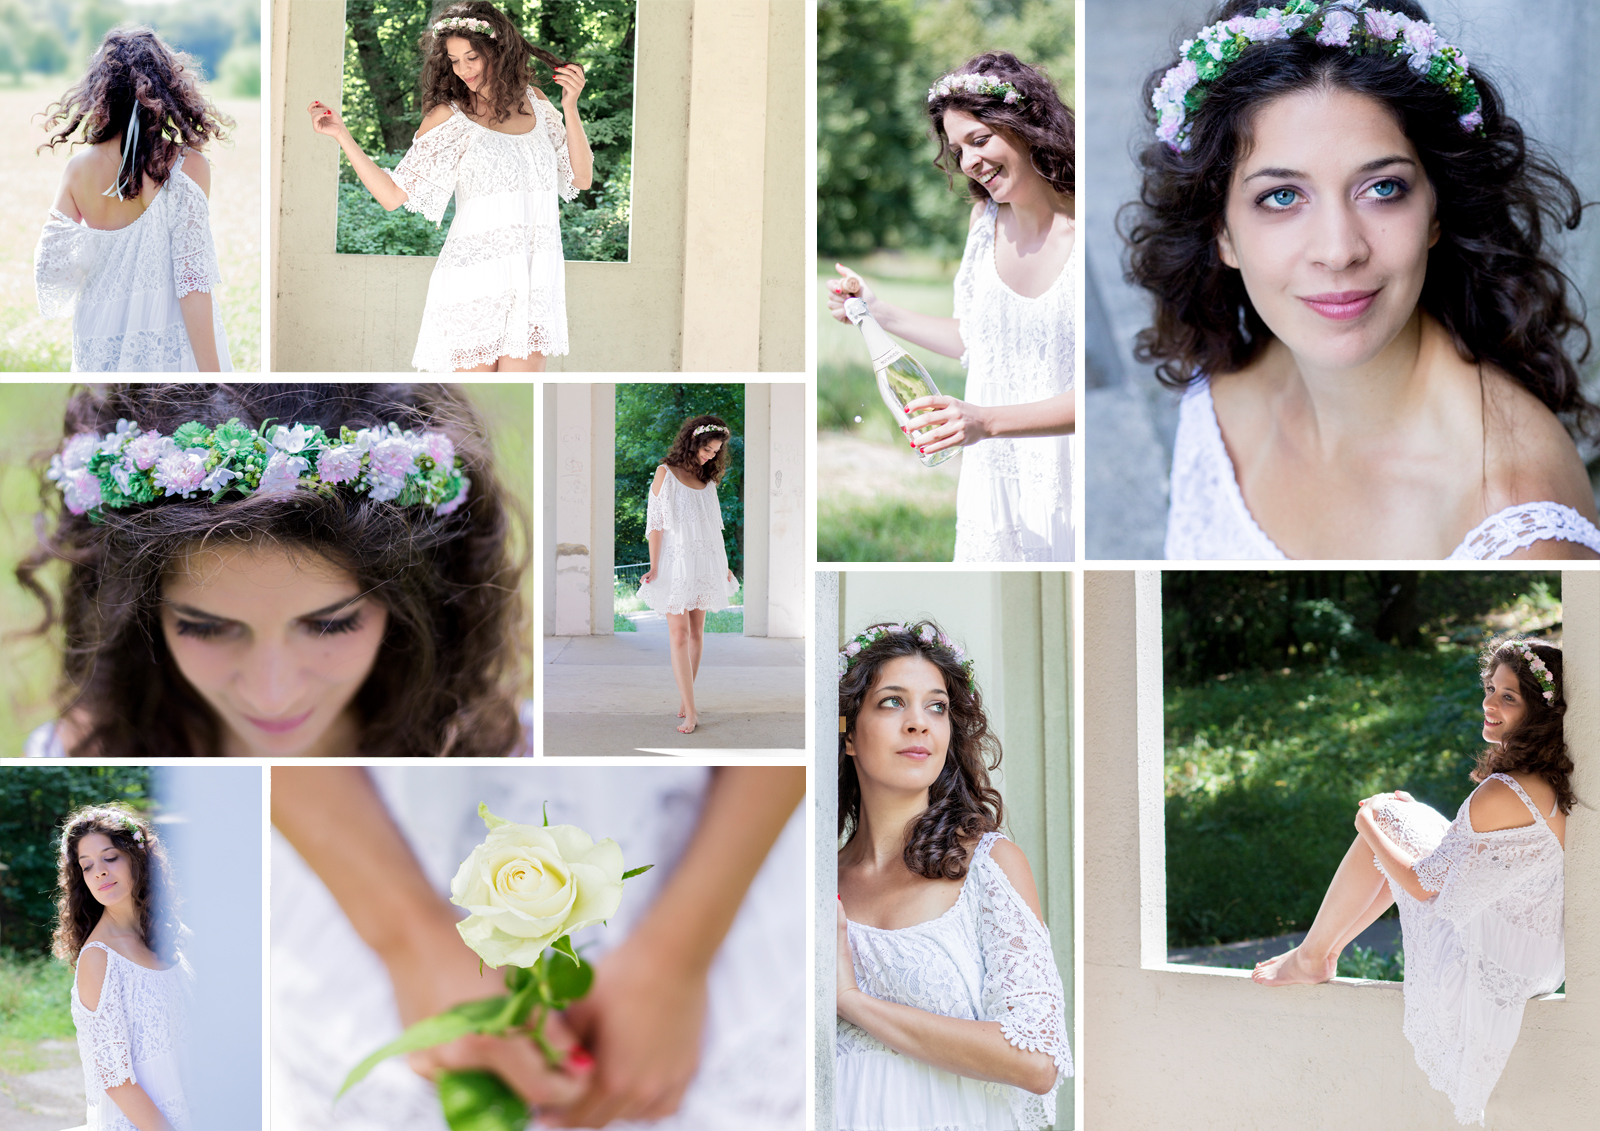 Sommer - Hochzeit - Braut - Natur - Fotografie. By Sibora Halili - Seabee Design & Illustration - Wien. Photography - Vienna - Bride - Wedding - Love